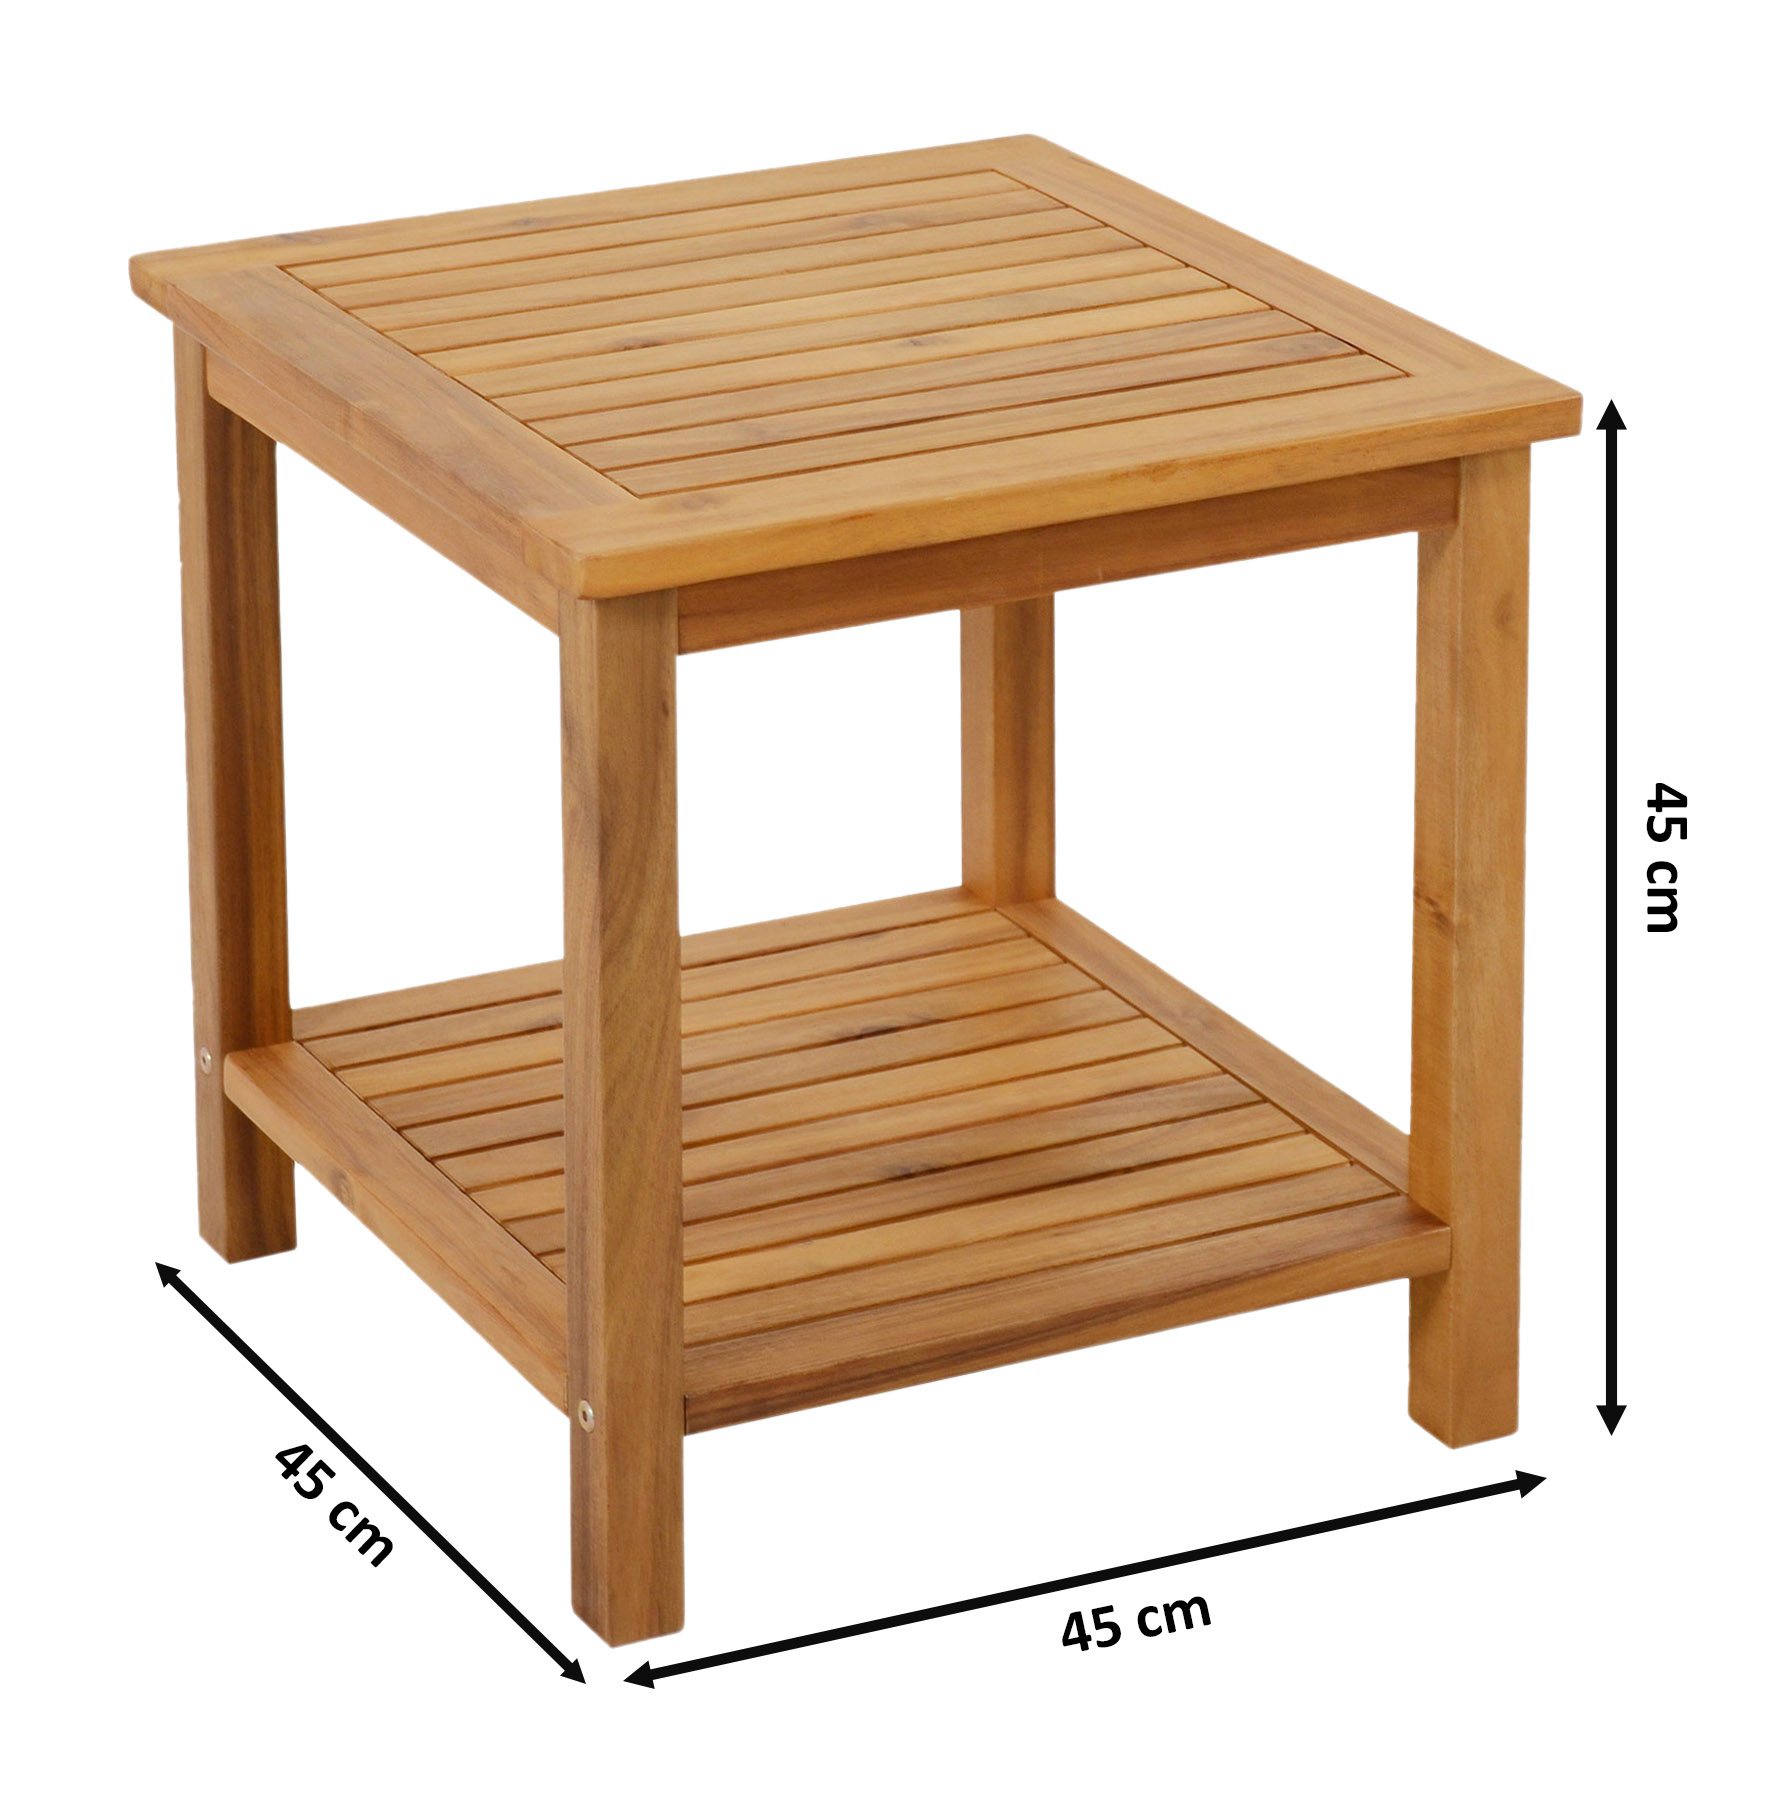 Akazien Beistelltisch IOWA geölt - 45 x 45 cm - Holz Gartentisch mit 2 Ablagen - Couchtisch Bistrotisch Holztisch aus Akazienholz für Balkon Terrasse Garten